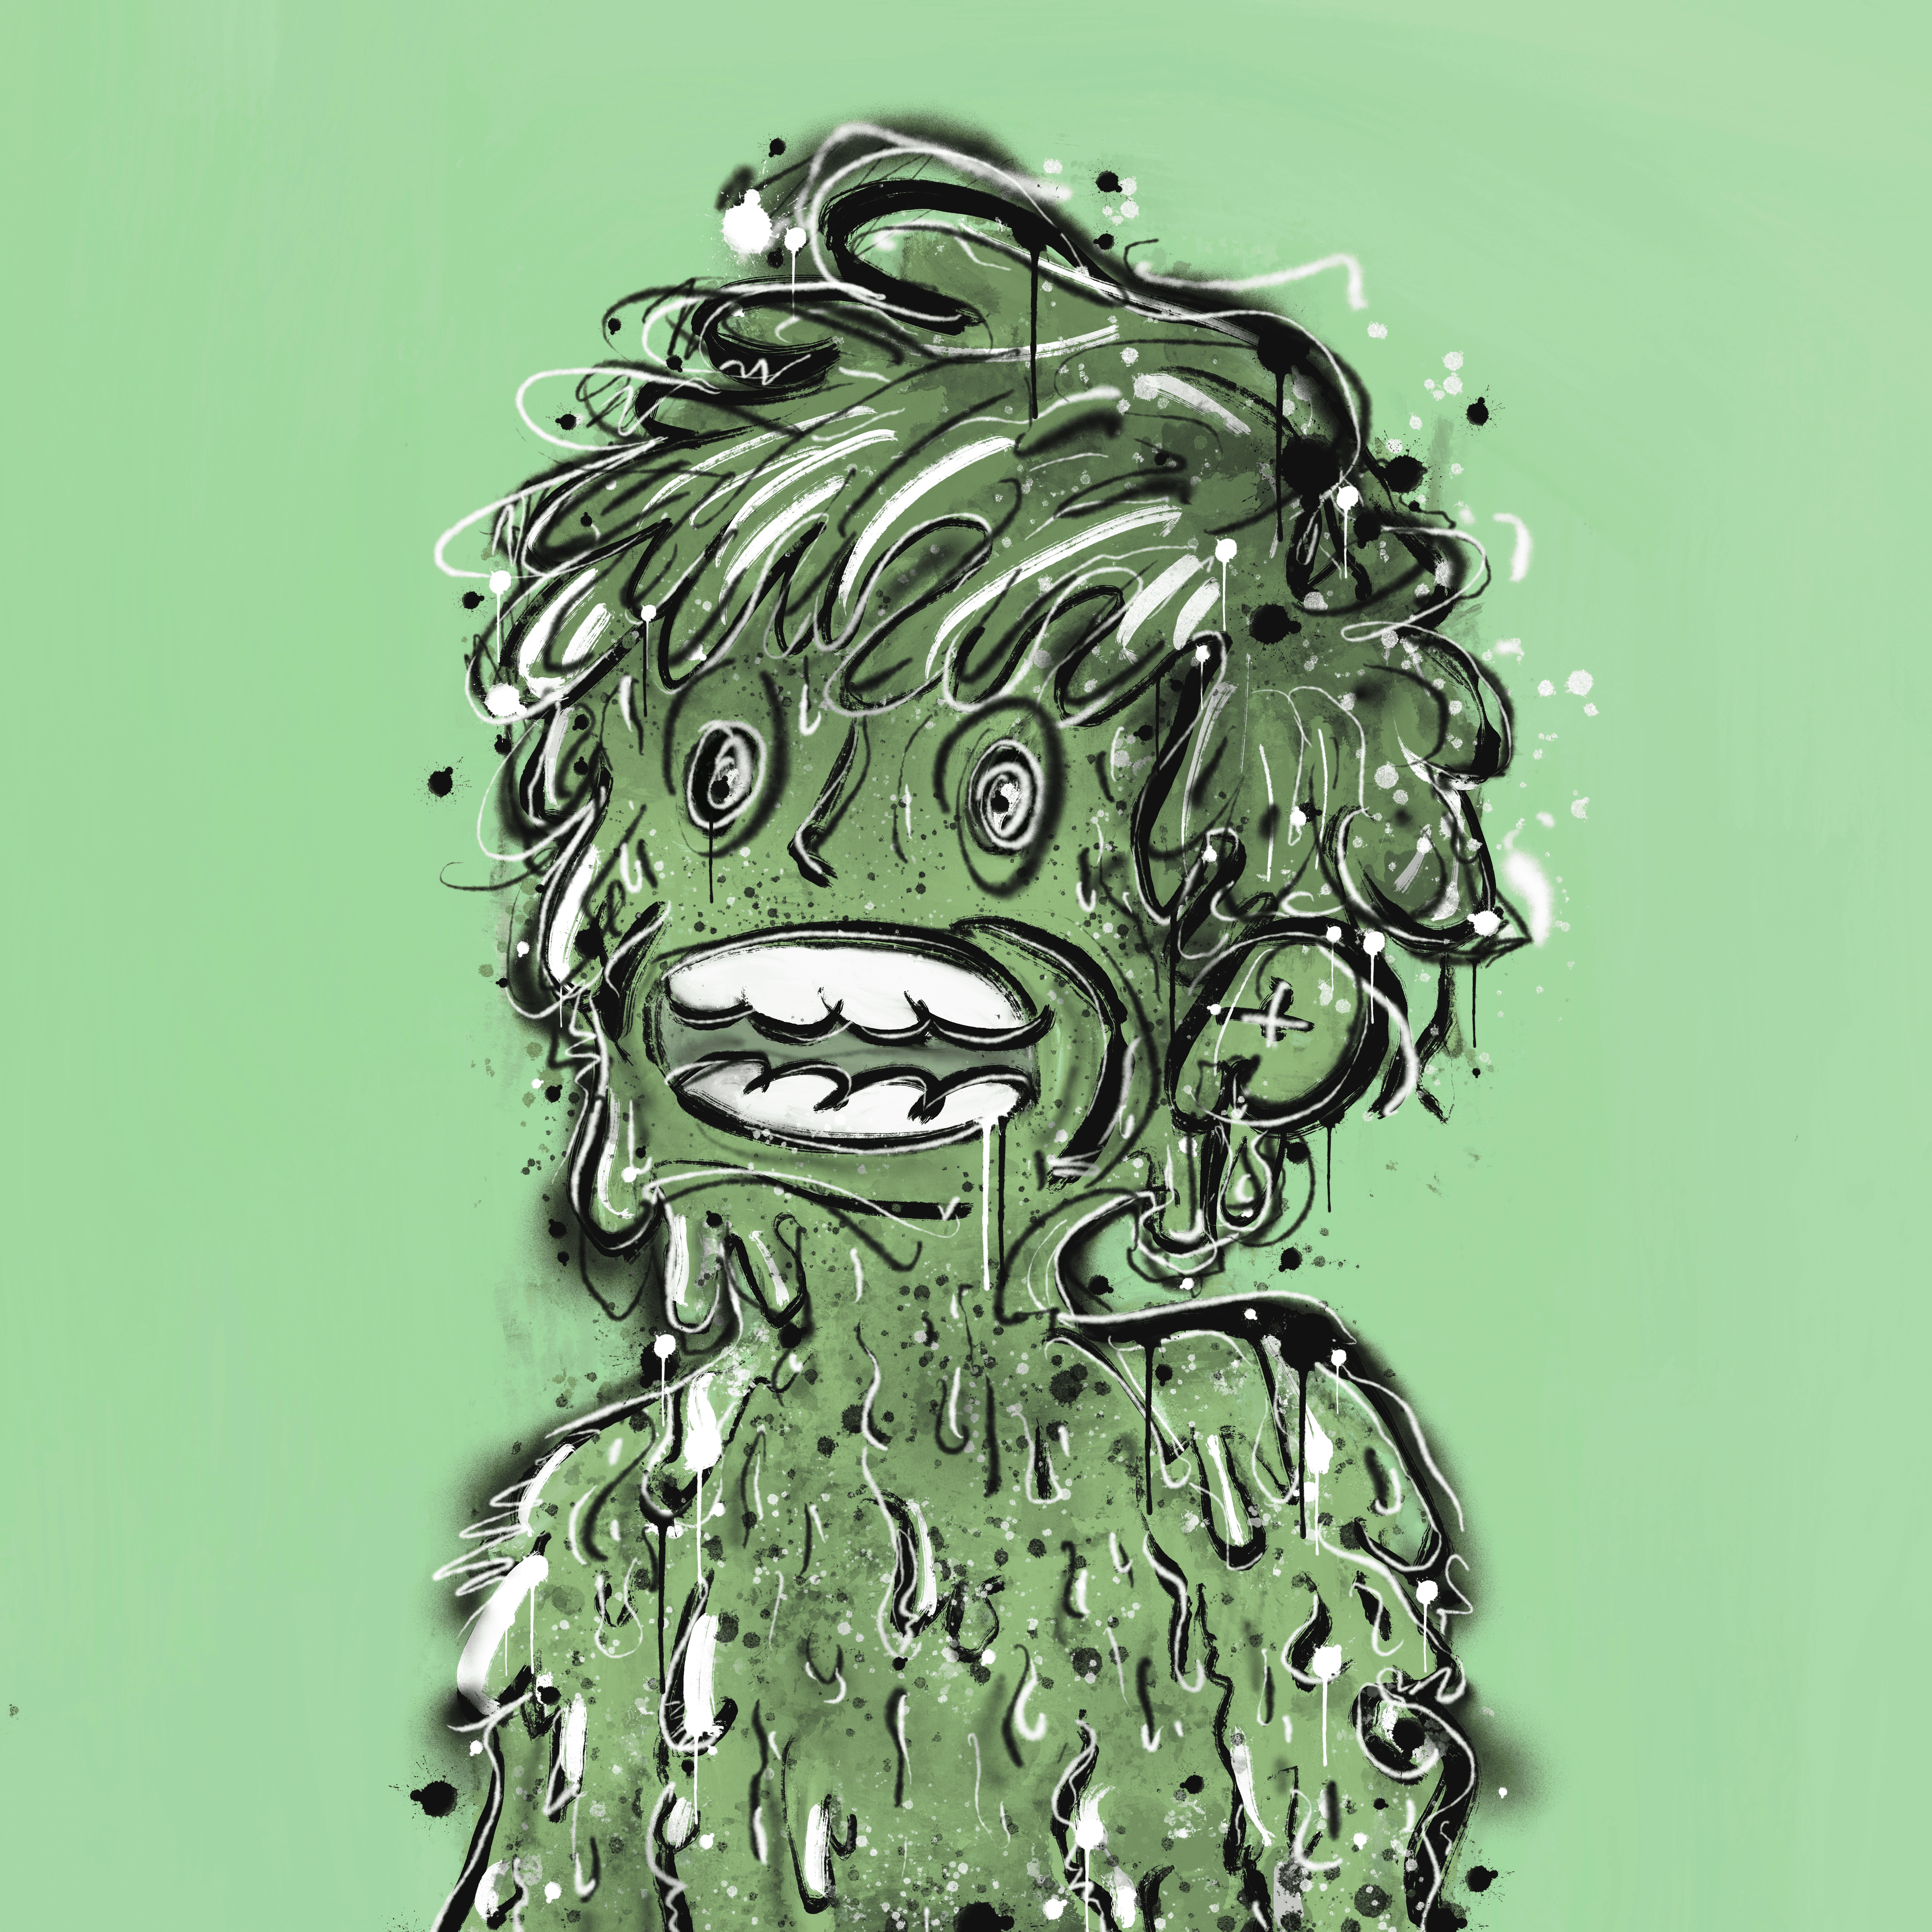 Vandal Slime